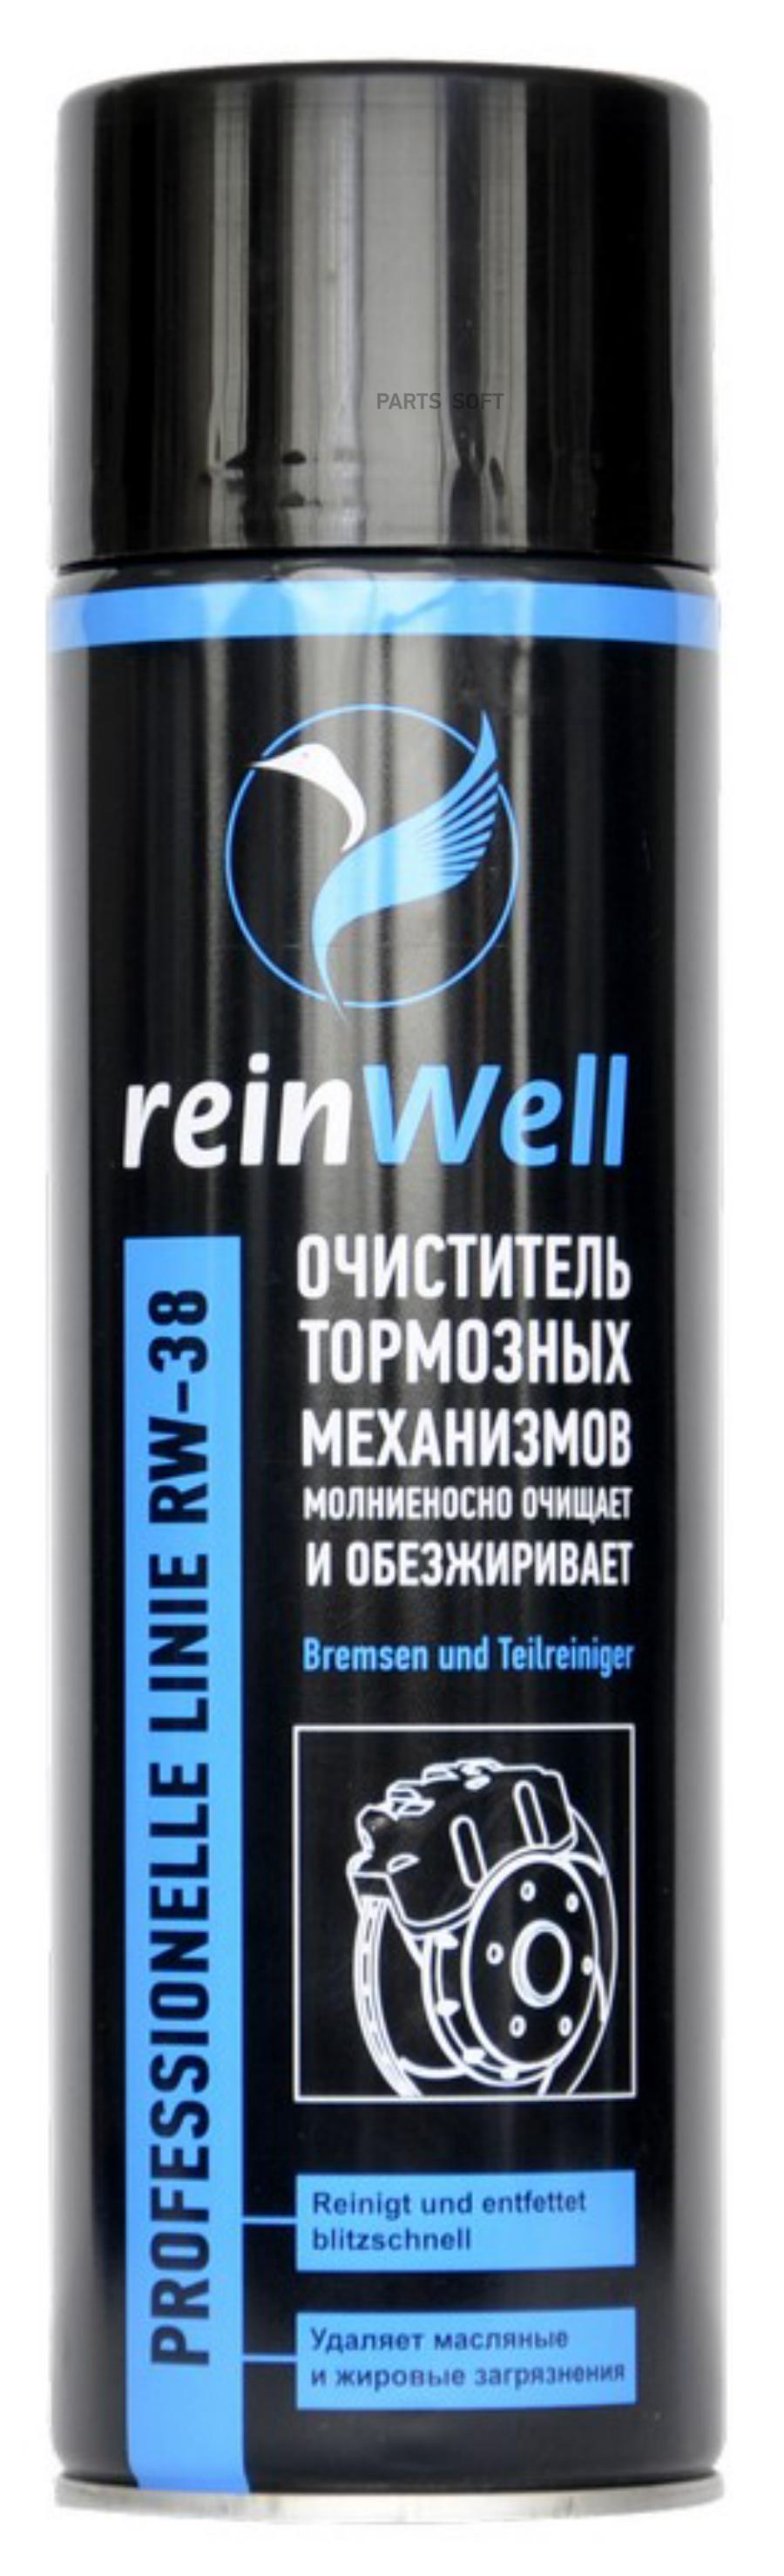 Очиститель тормозных механизмов rw-38 0,5л reinwell